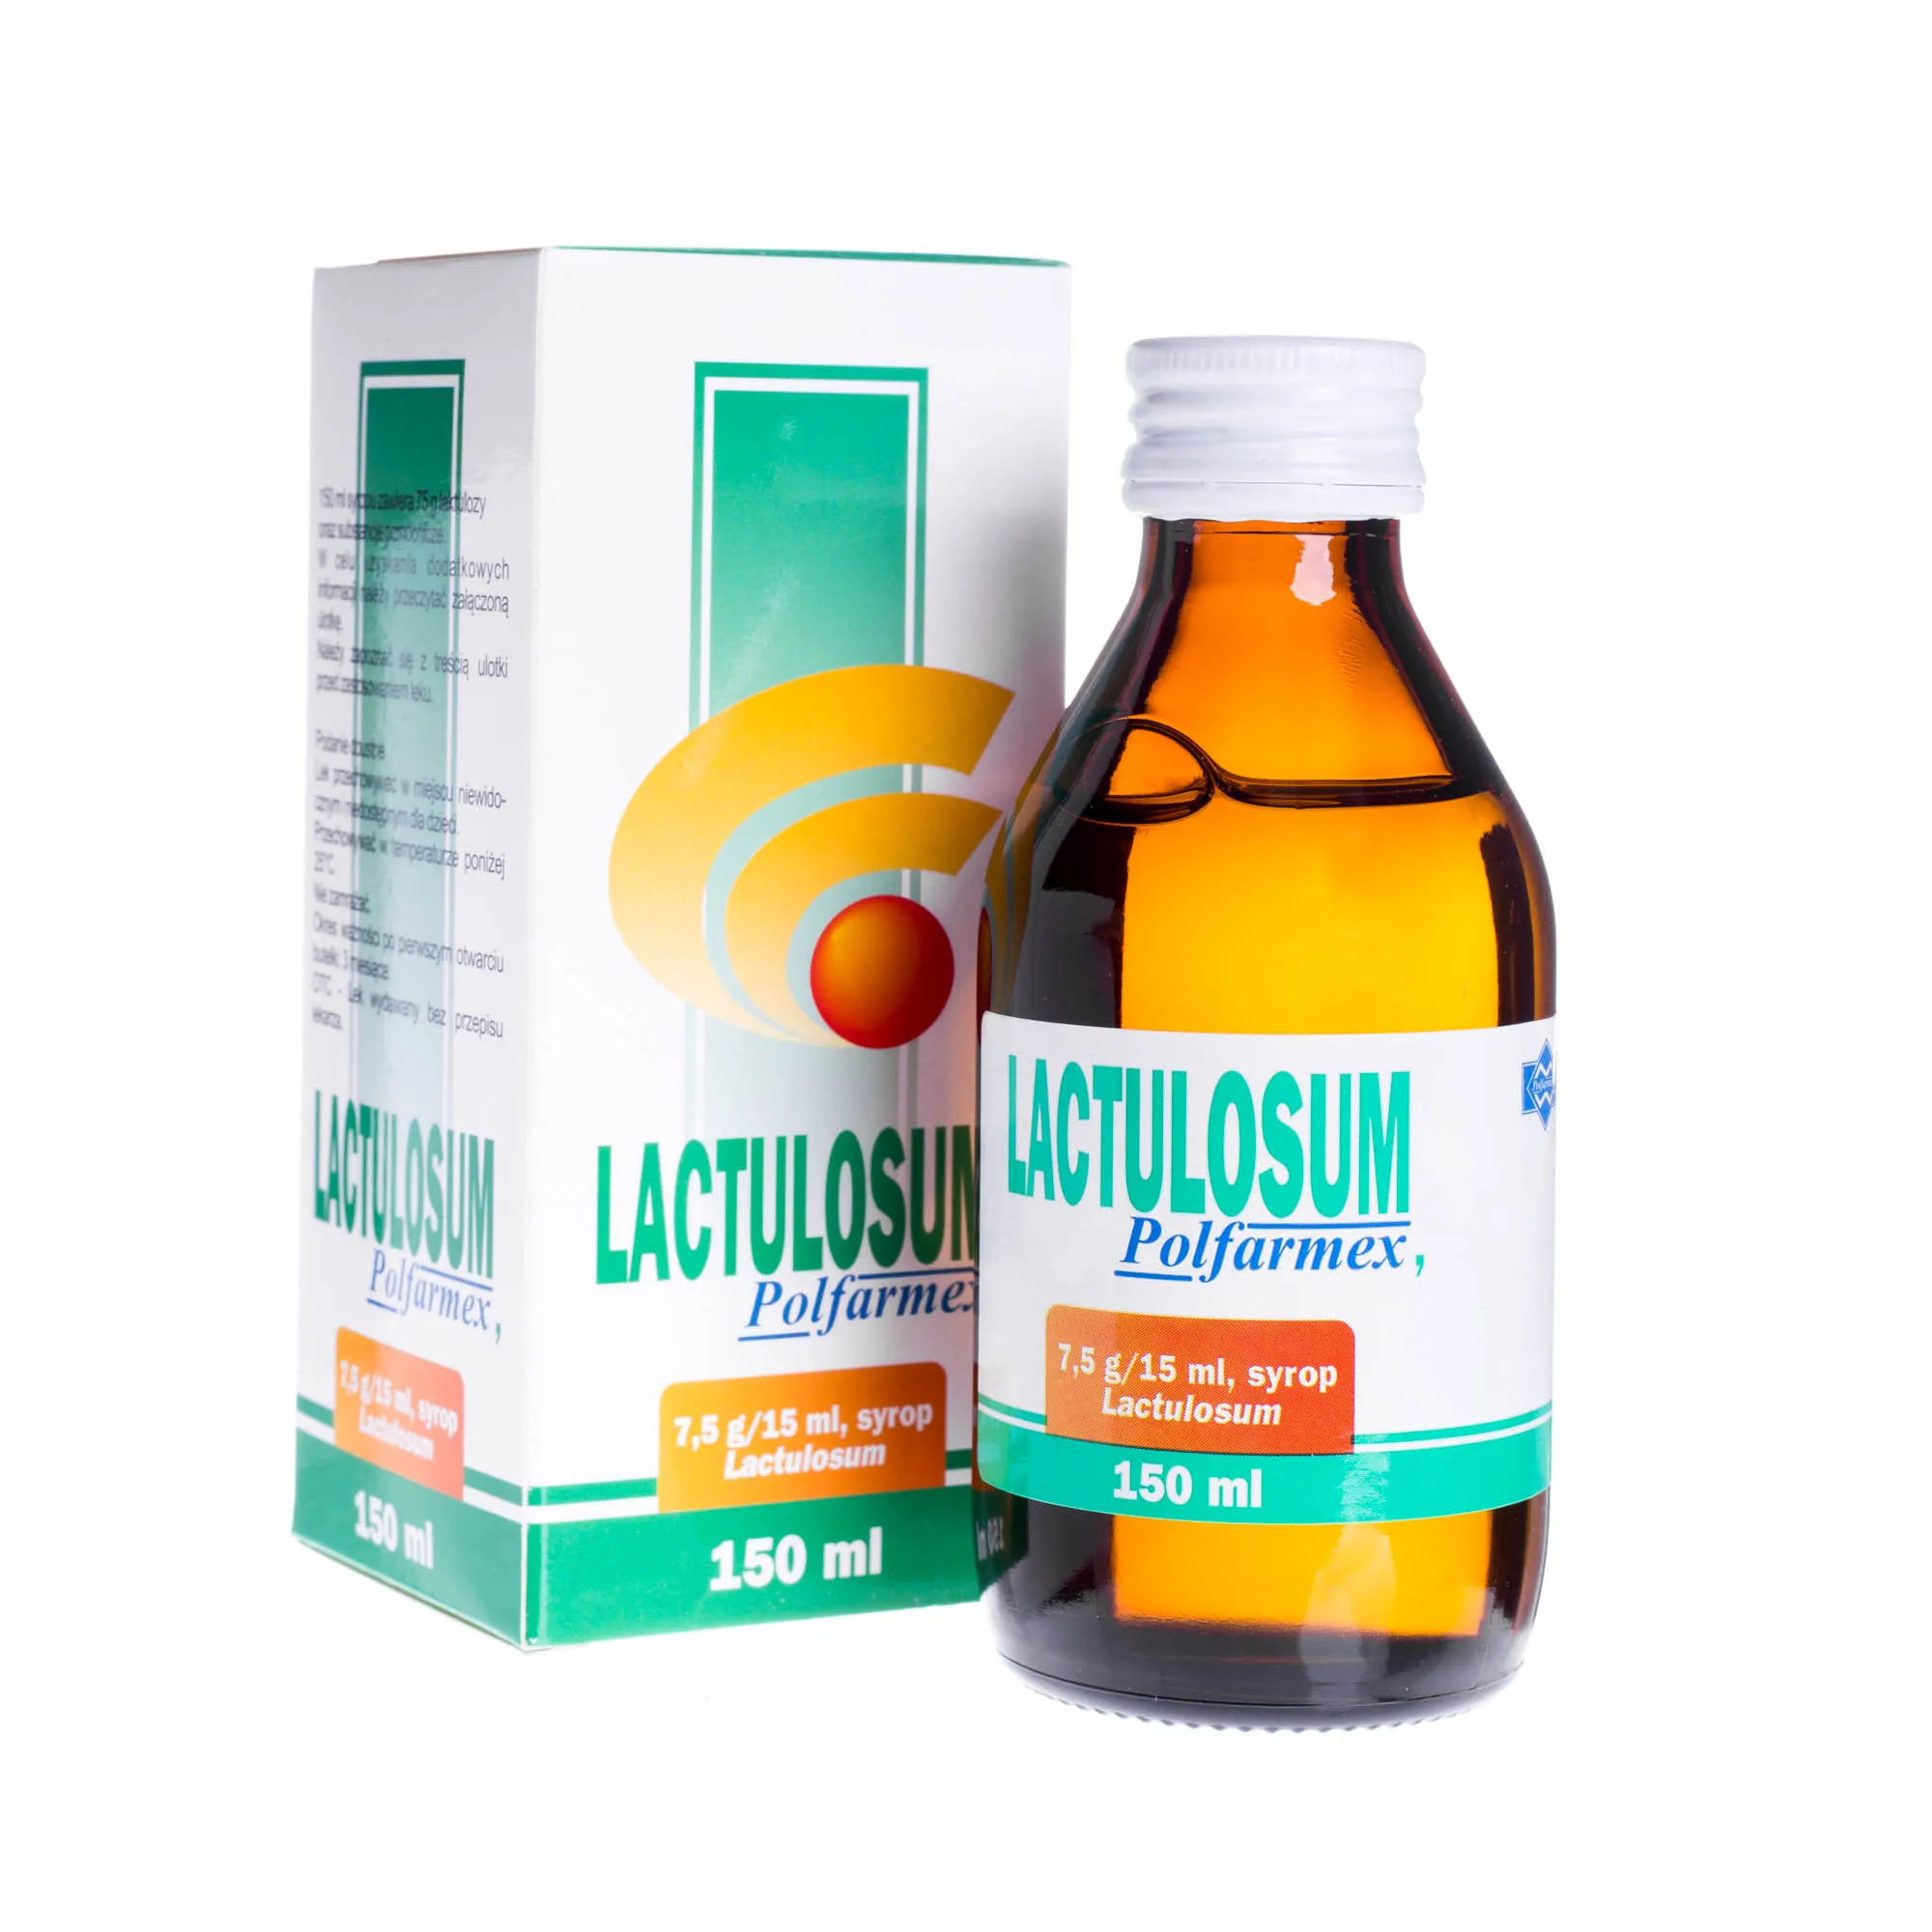 Lactulosum Polfarmex, 7,5 g/15 ml, syrop, 150 ml 